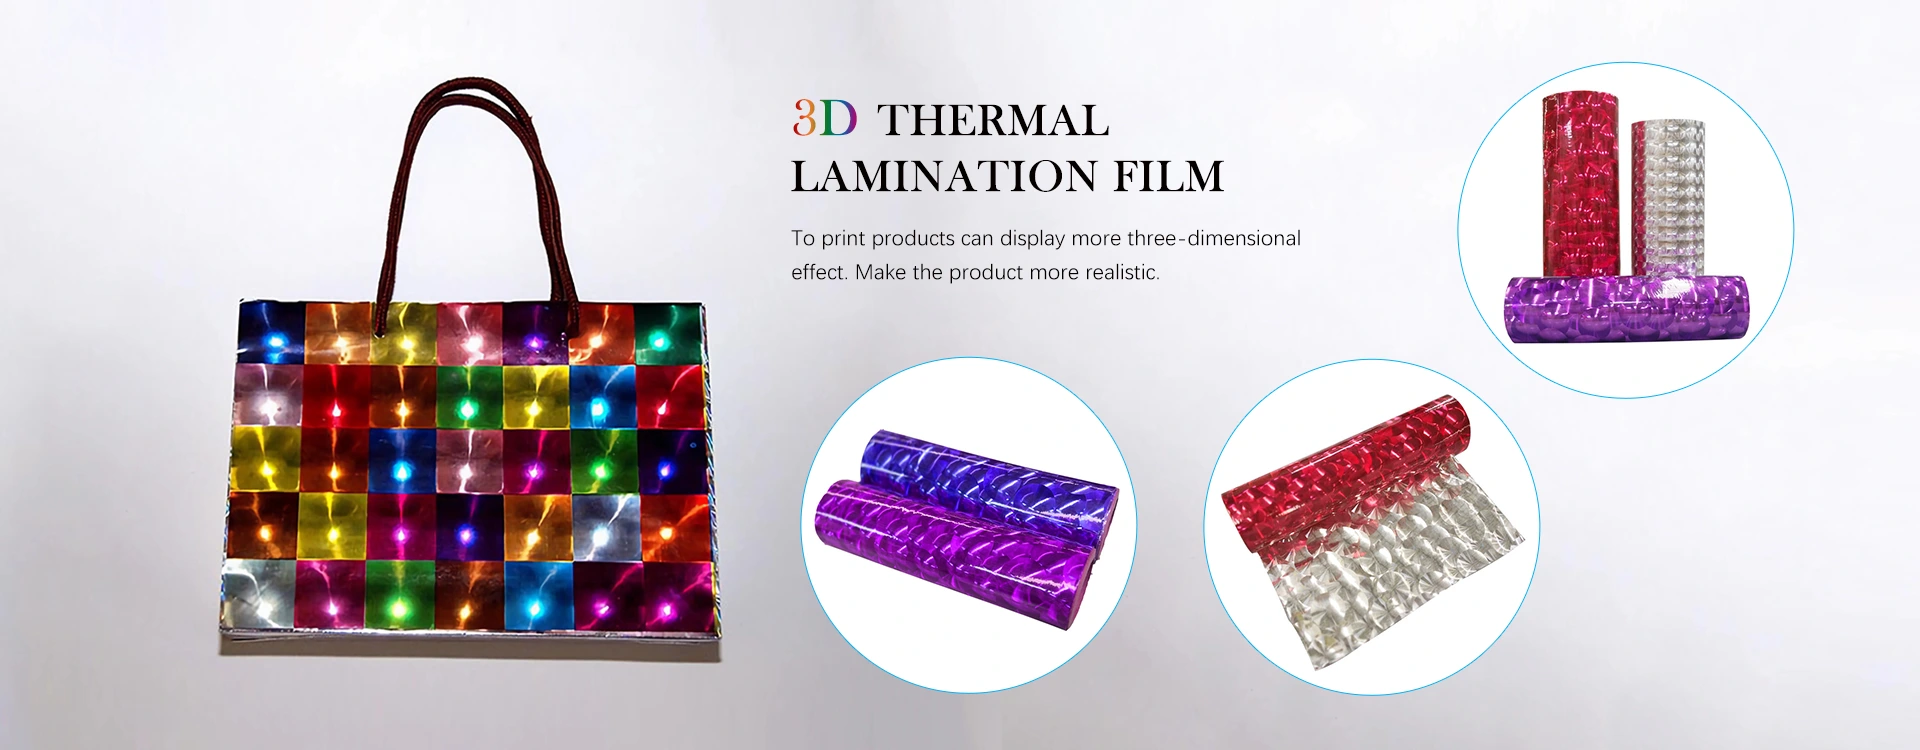 Fabricantes de películas de laminación térmica 3D